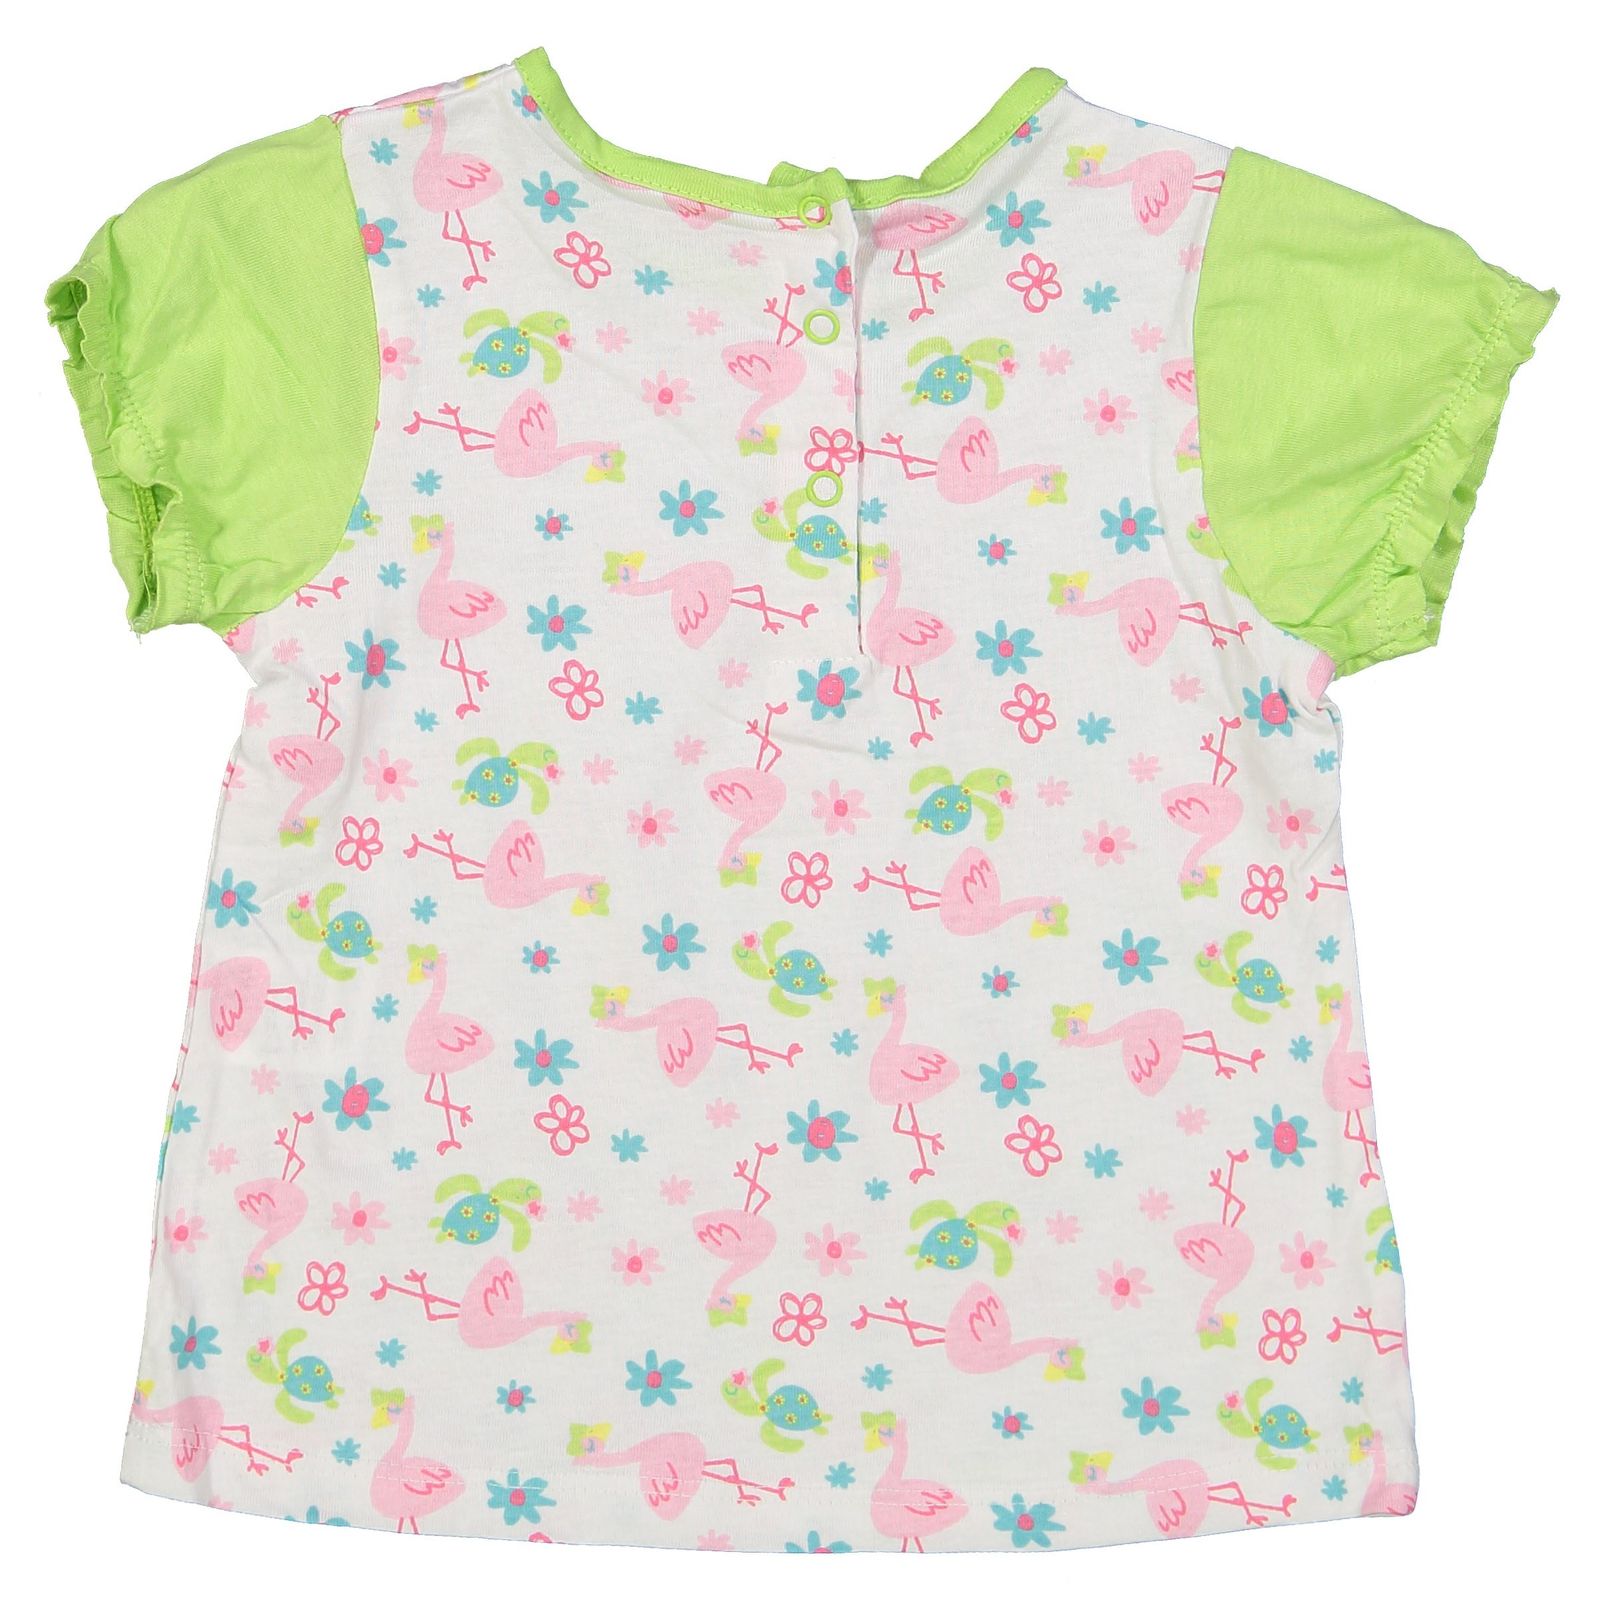 تی شرت و شلوارک نخی نوزادی دخترانه بسته 2 عددی - بلوکیدز - سبز روشن و سفيد - 8